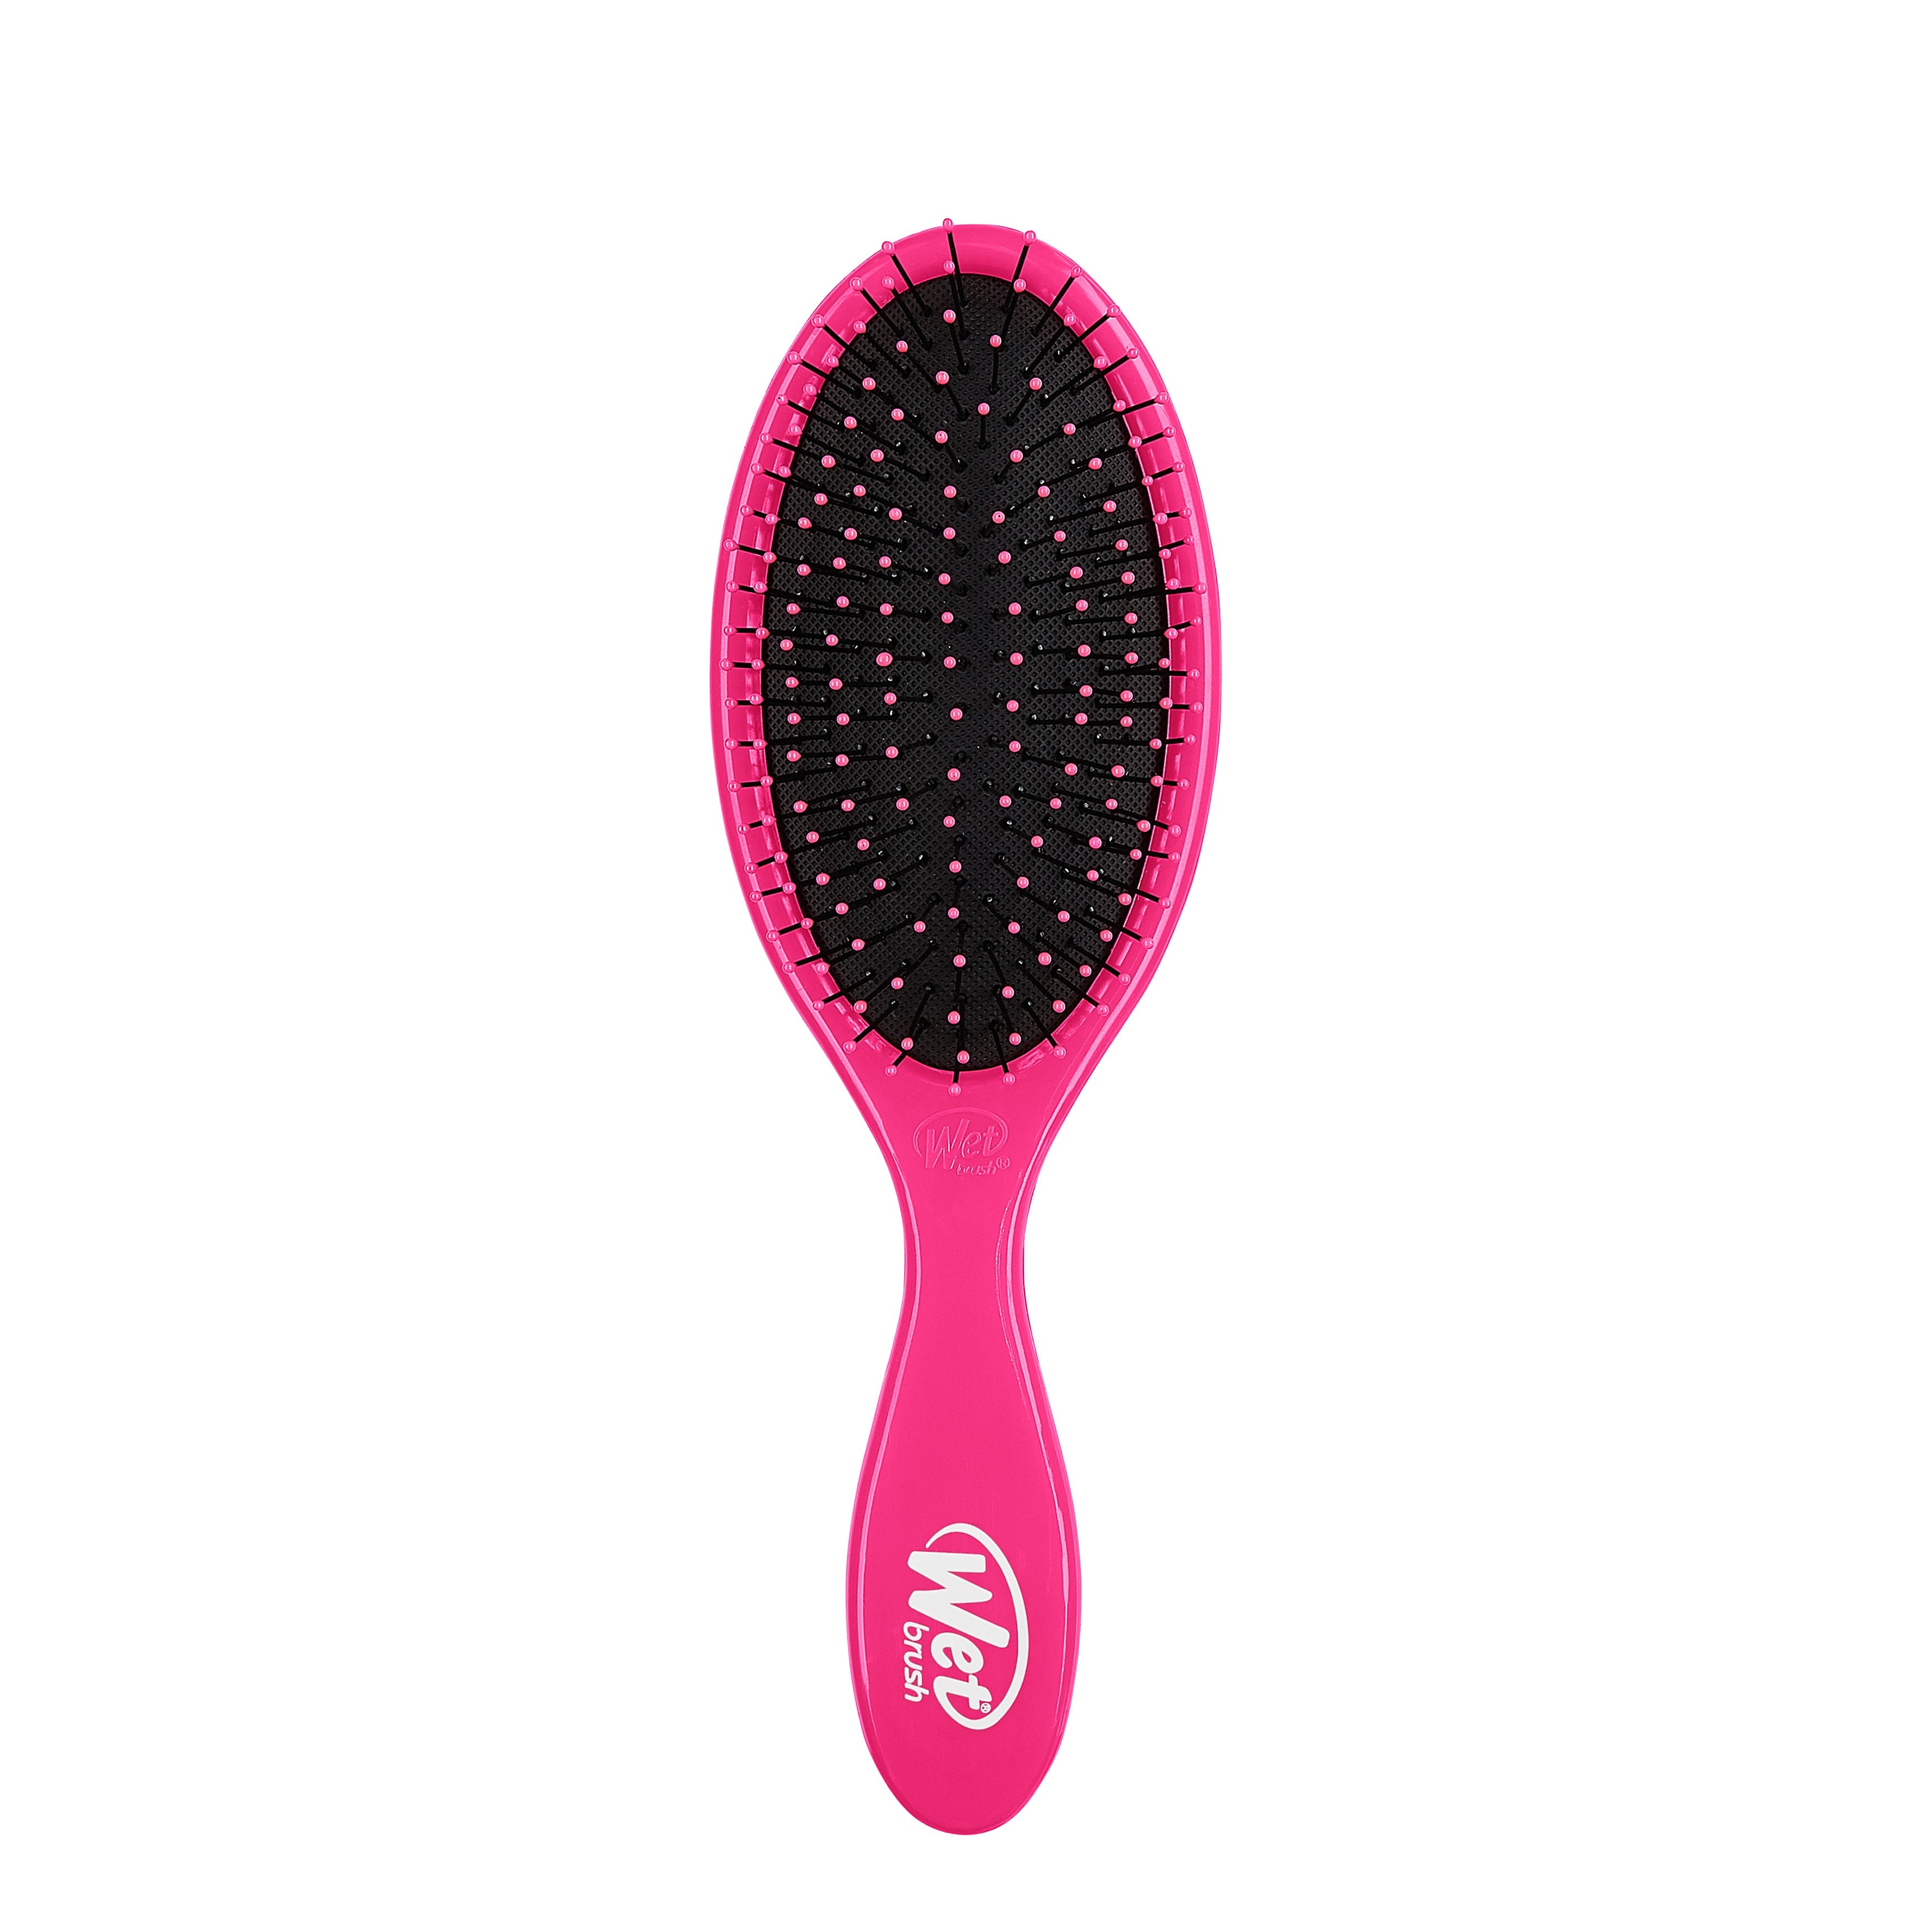 Wet Brush Original Detangler Limited Edition Ombre Glitter Hair